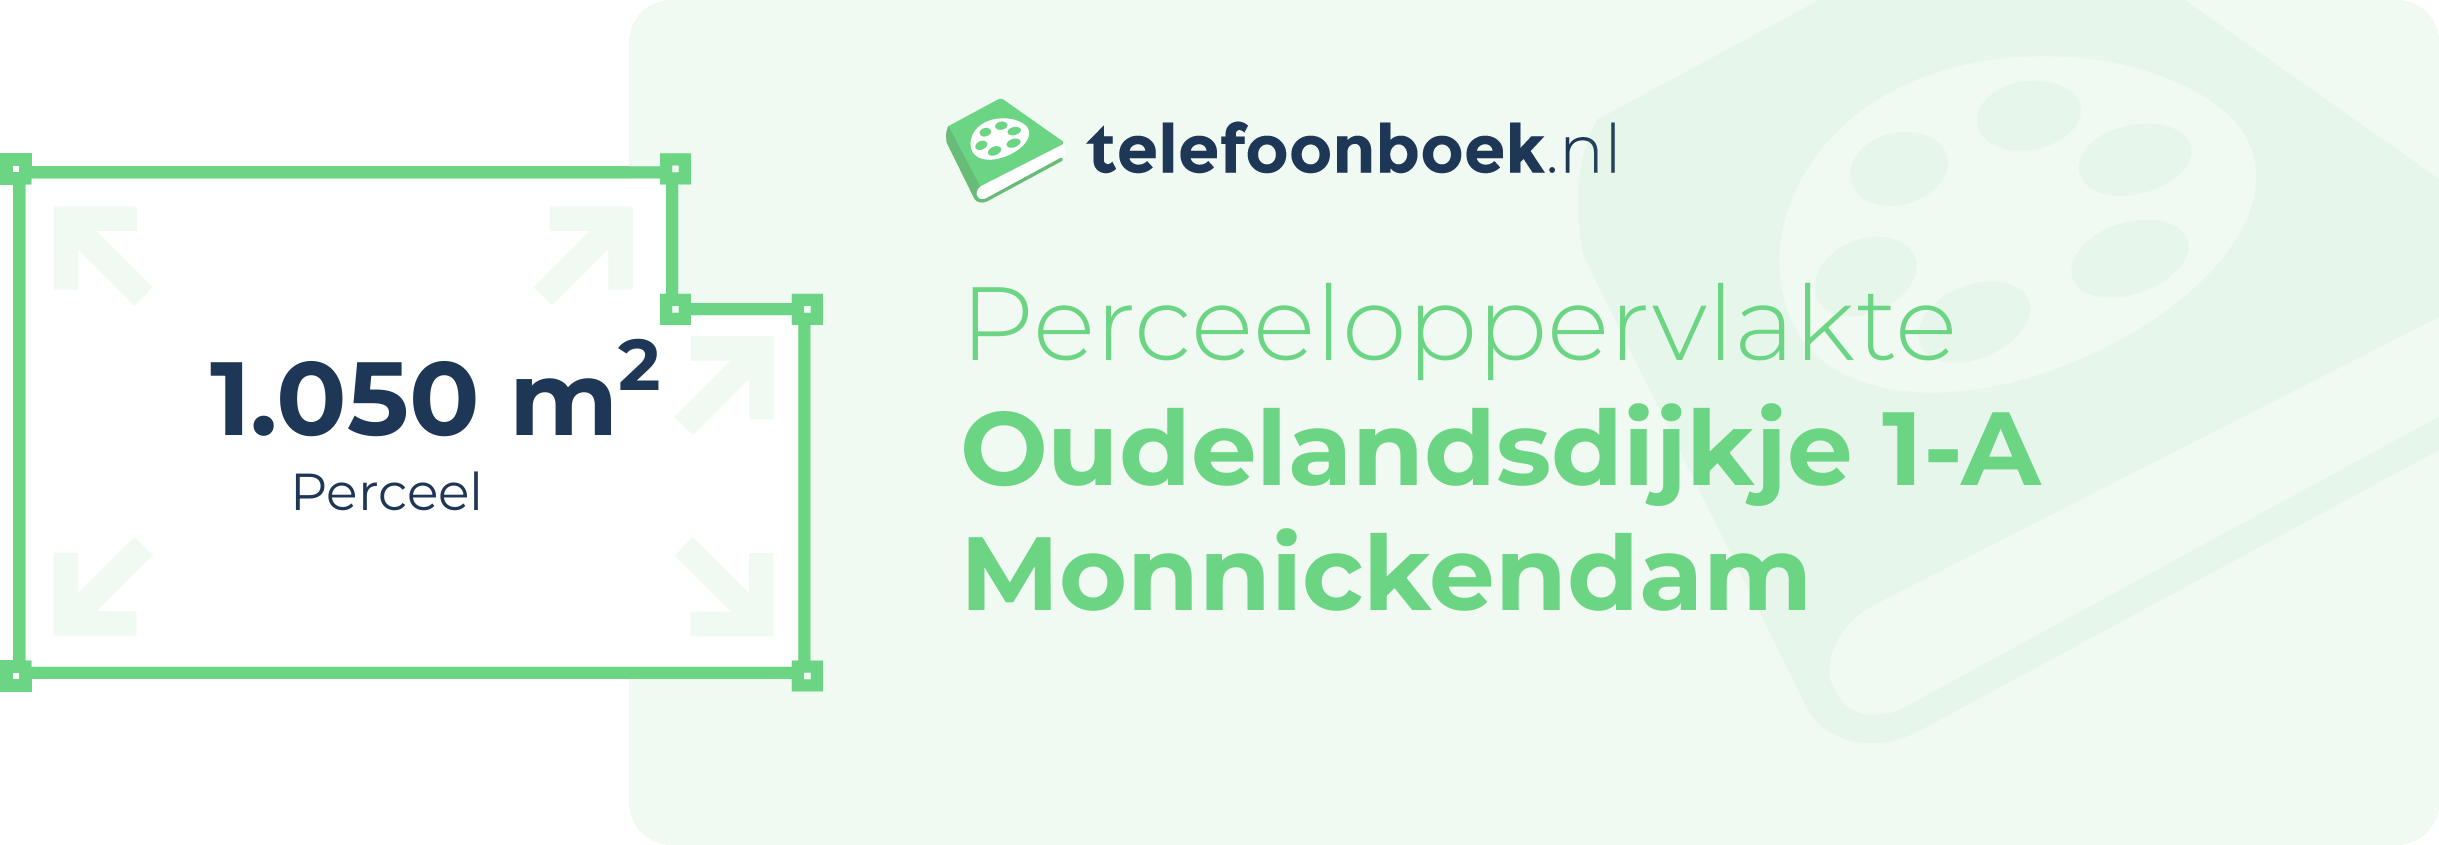 Perceeloppervlakte Oudelandsdijkje 1-A Monnickendam